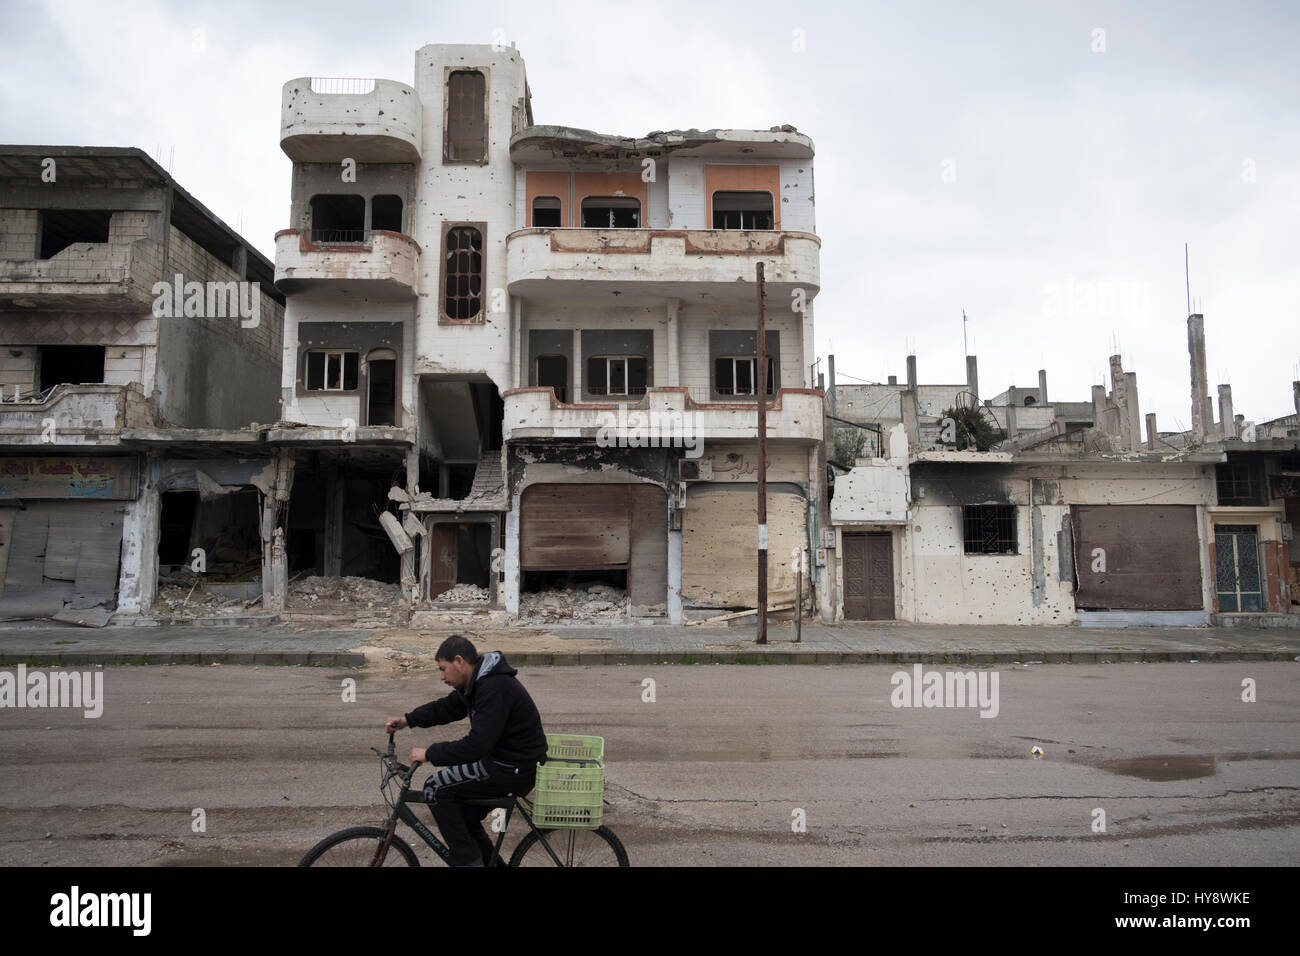 Bicycler dans quartier en difficulté Baba Amr à Homs, en Syrie au début de 2017 Banque D'Images